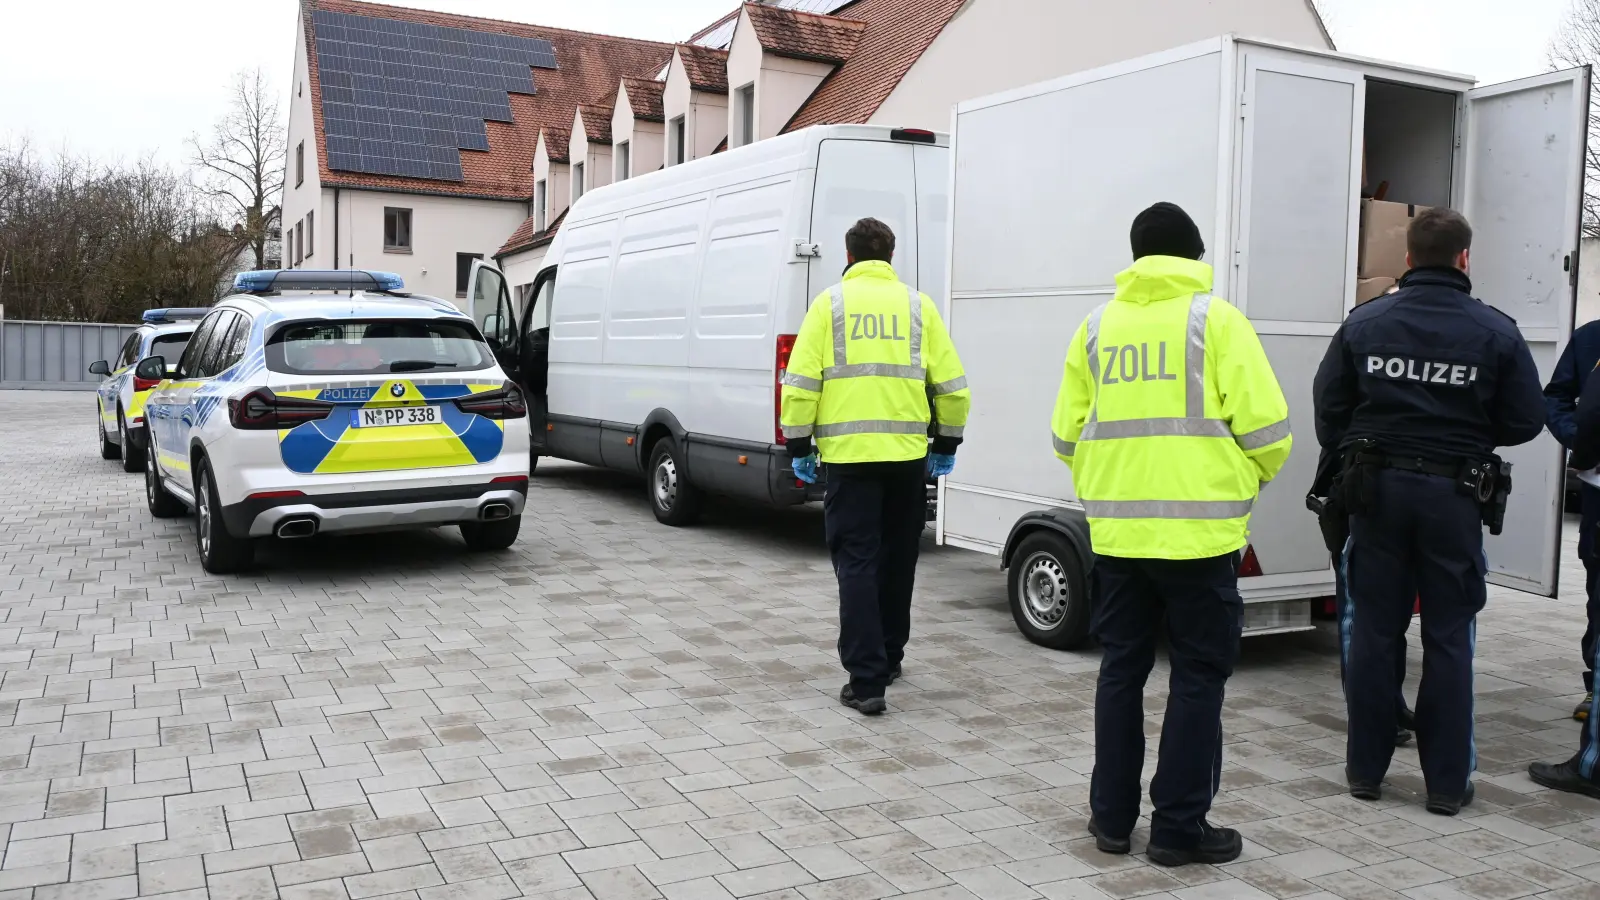 Neben der allgemeinen Kontrolle der Fahrzeuge und der Suche nach Verstößen untersuchten die Polizisten und die Zollbeamten auch den Ladungsinhalt nach verbotenen Waren. (Foto: Luca Paul)